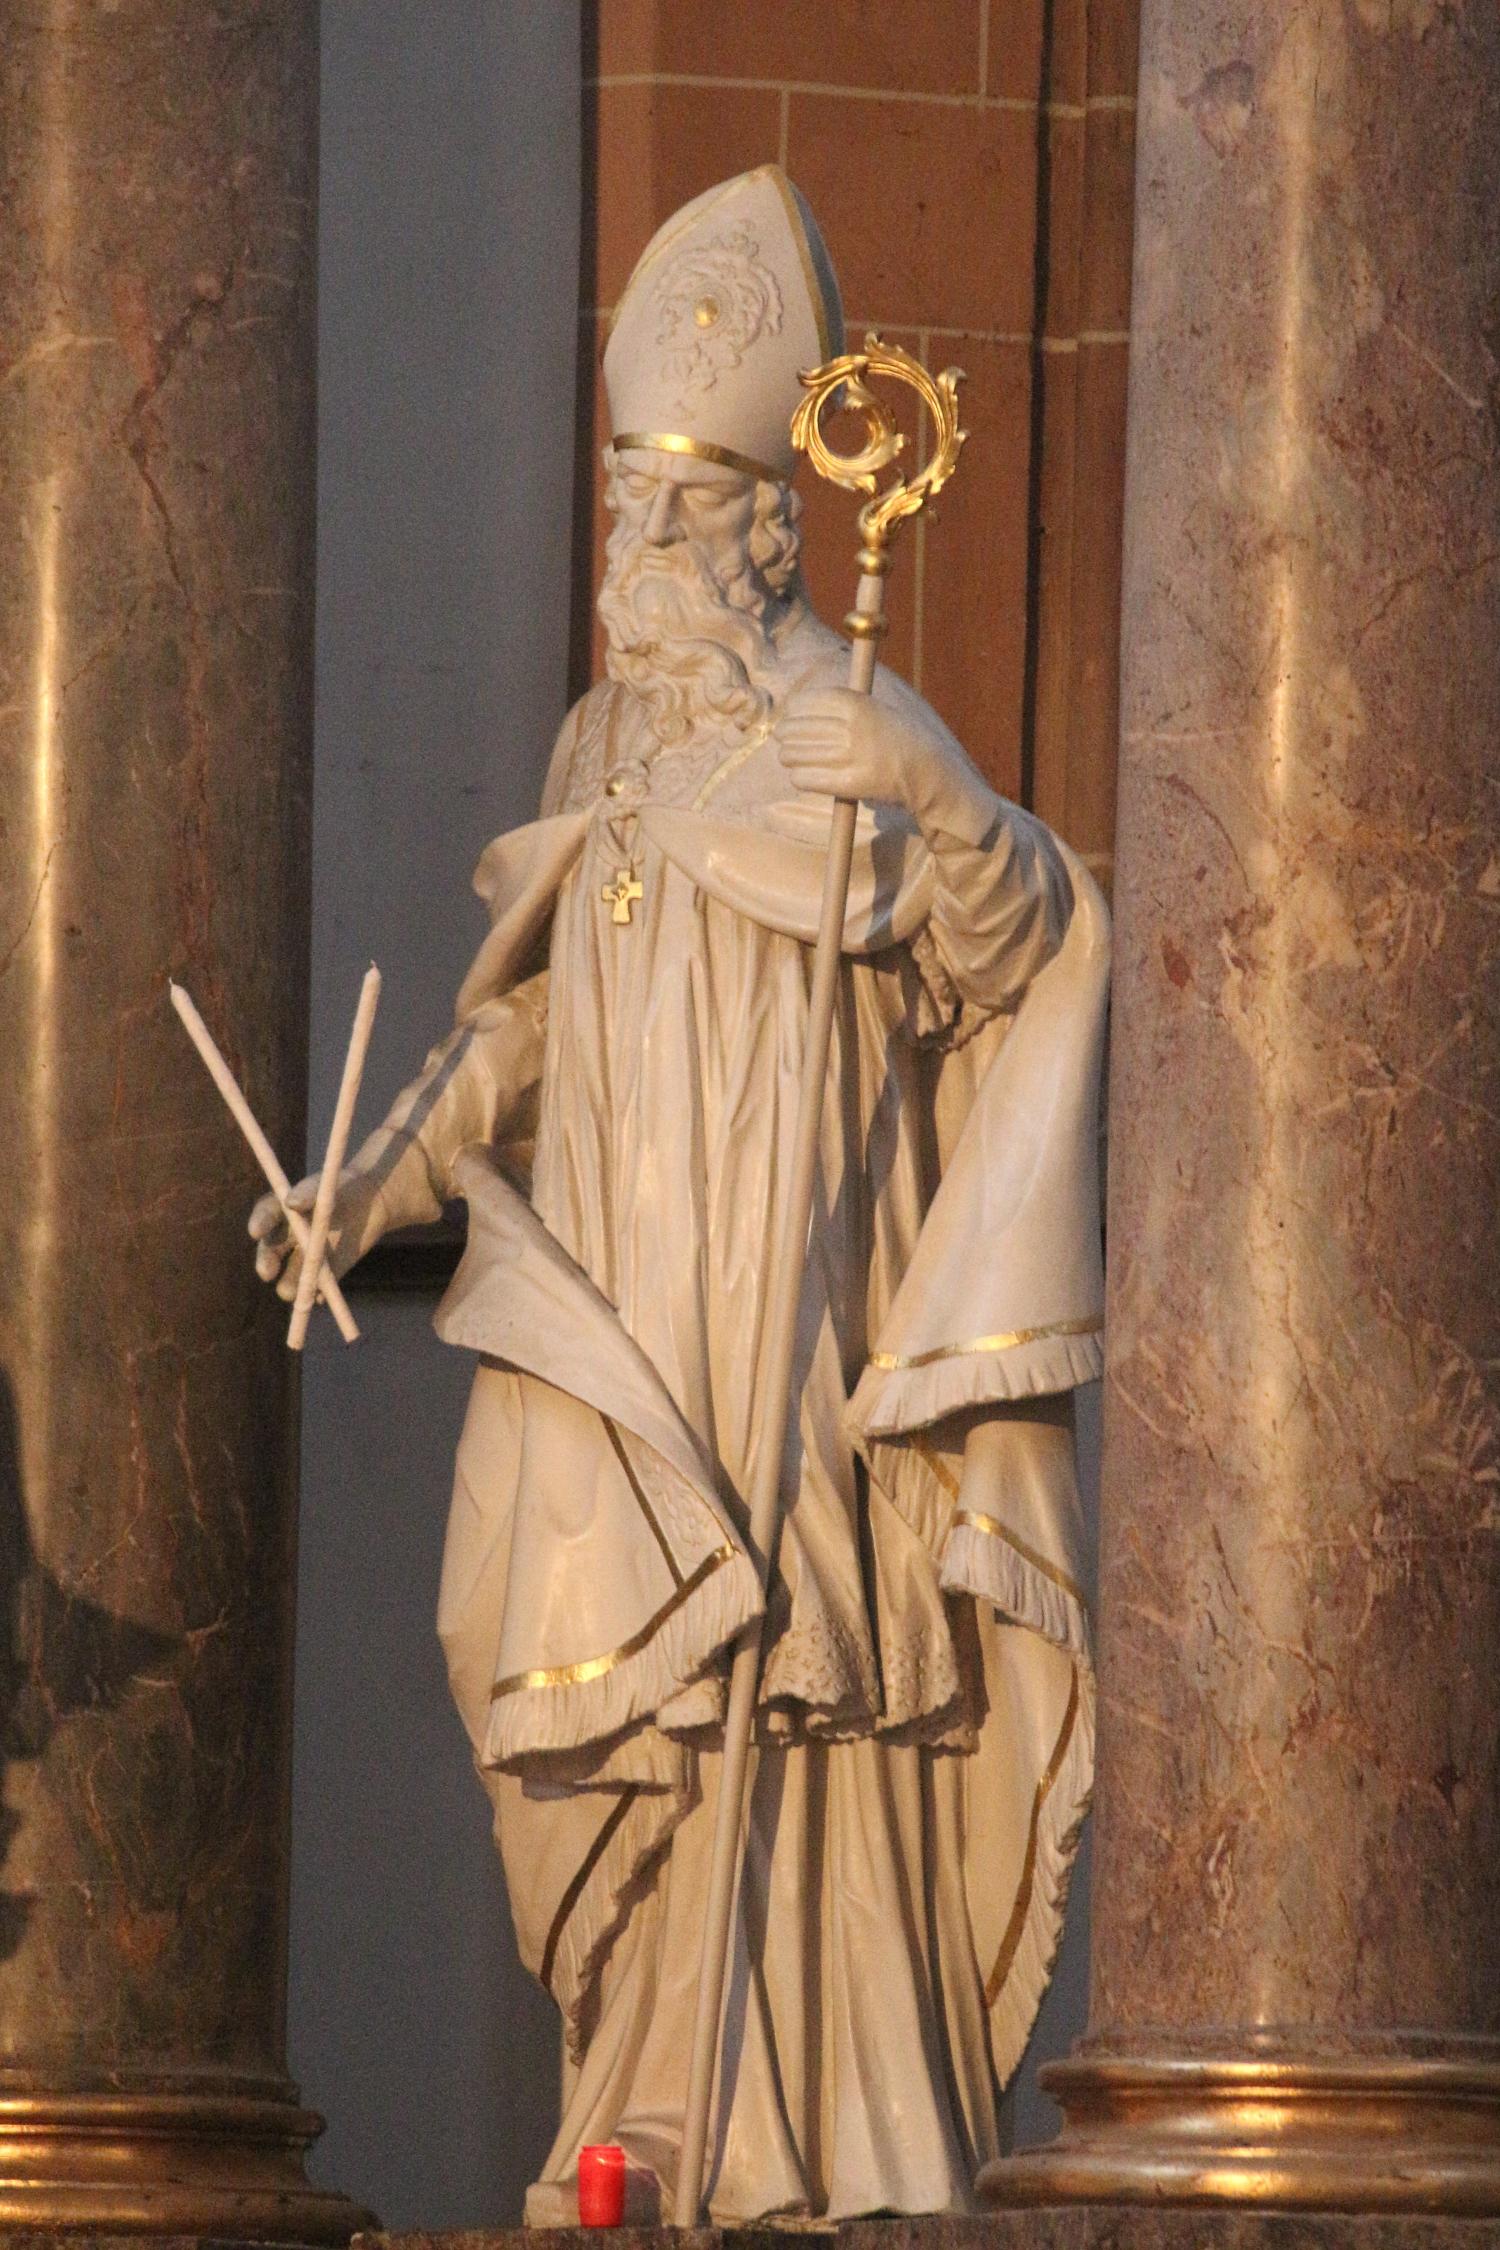 Mainz, 3. Februar 2022: Der heilige Blasius ist der zweite Kirchenpatron von St. Quintin und im Hochaltar mit einer Darstellung vertreten. (c) Bistum Mainz / Blum